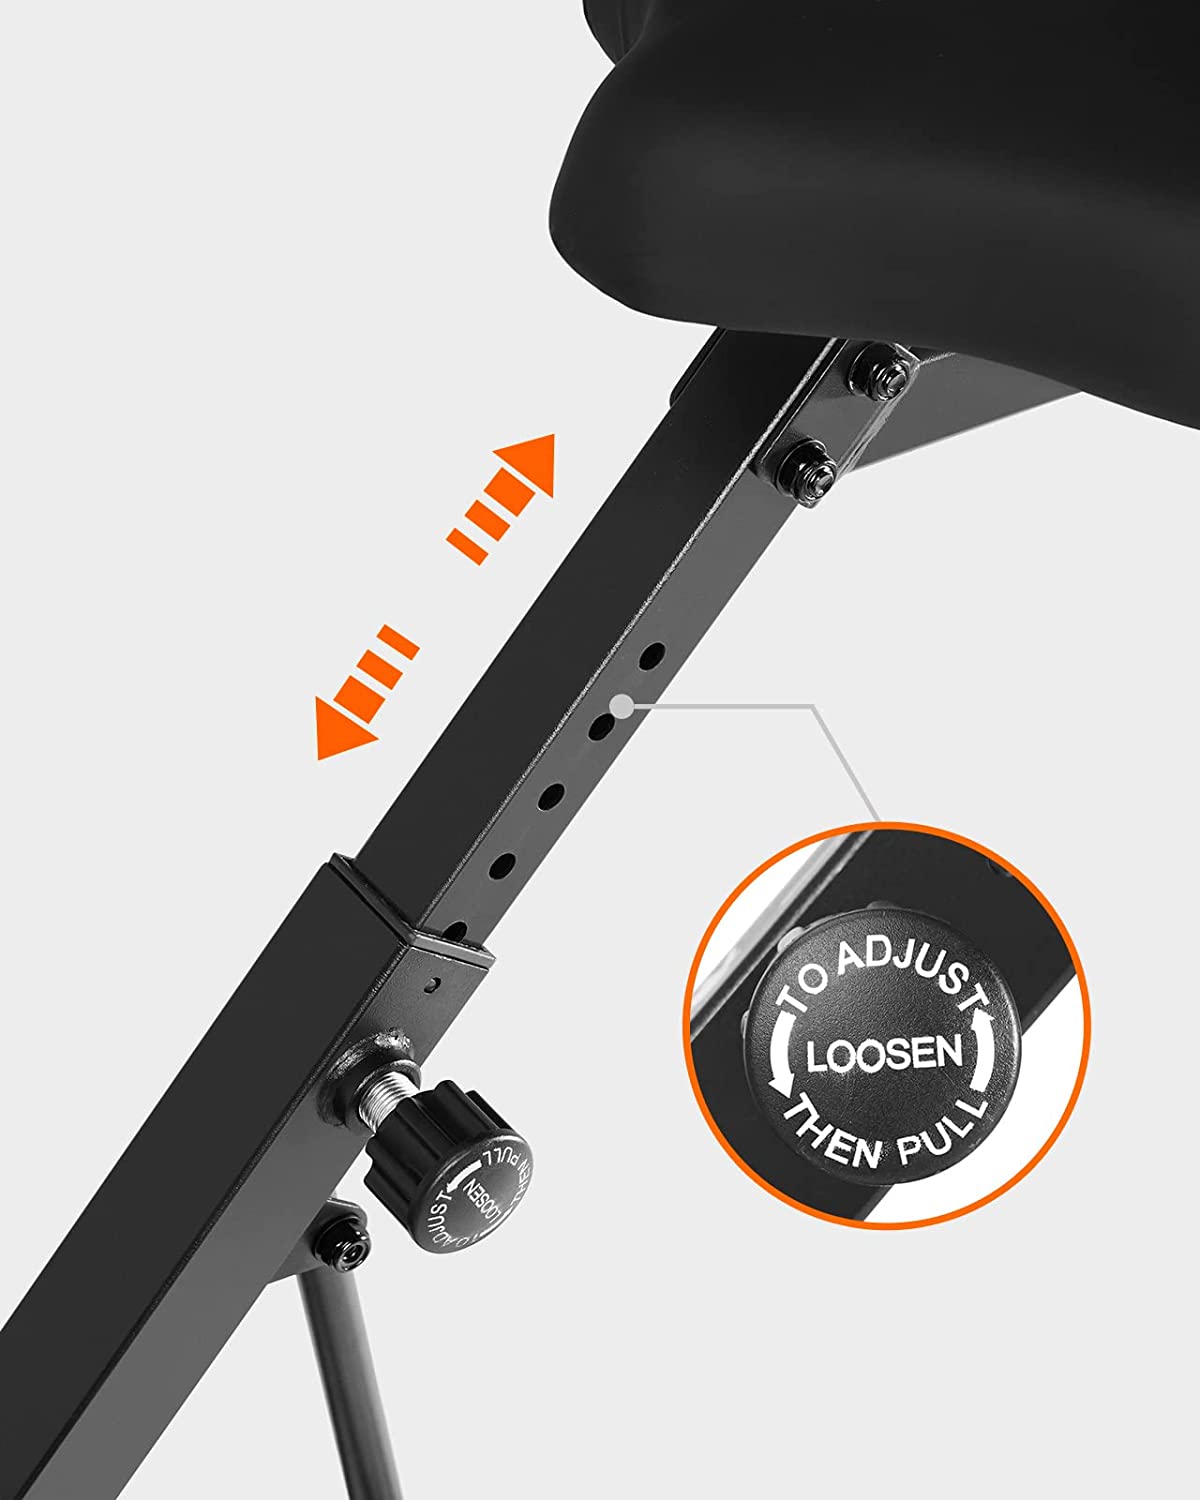 UREVO Foldable Exercise Bike - seat height adjustment 